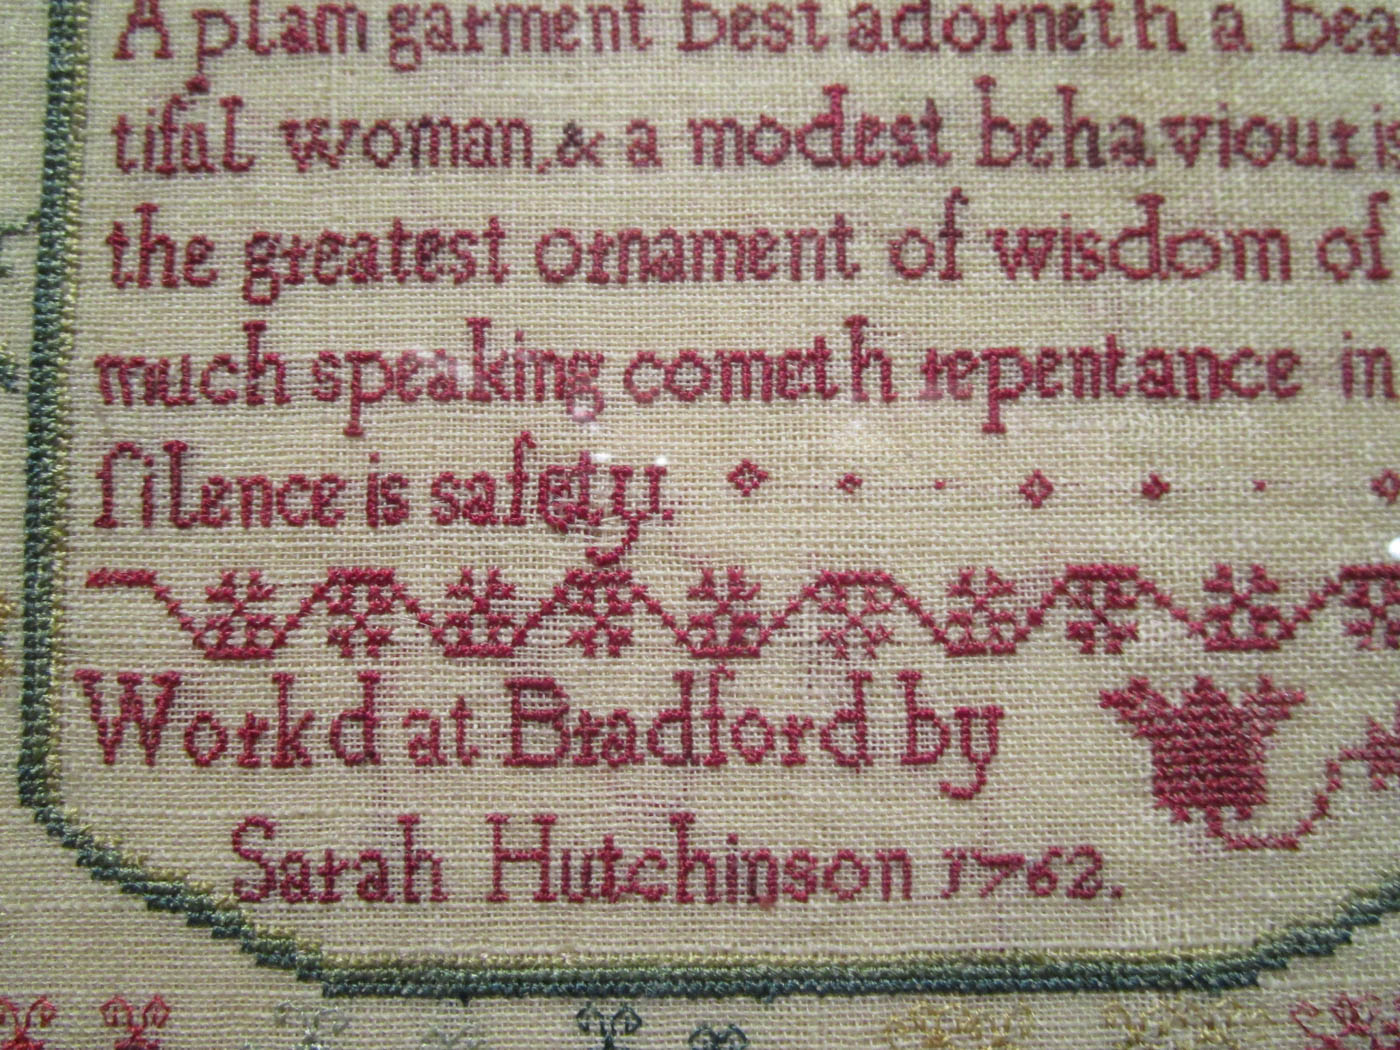 Sarah Hutchinson 1762 - Scarlet Letter